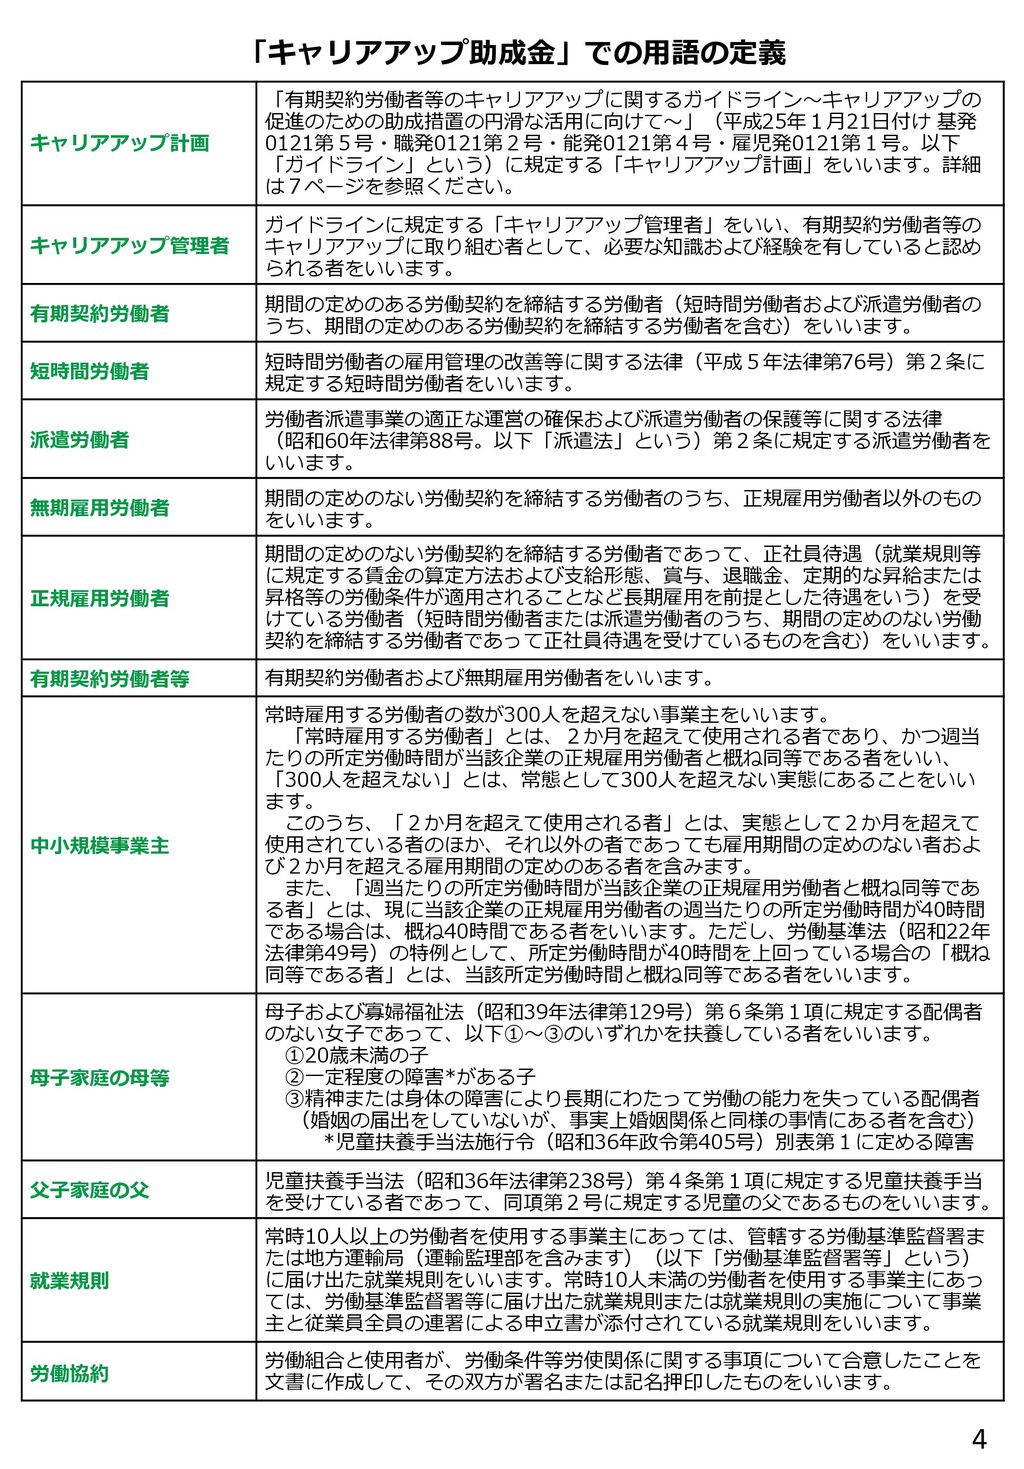 「キャリアアップ助成金」での用語の定義 キャリアアップ計画.